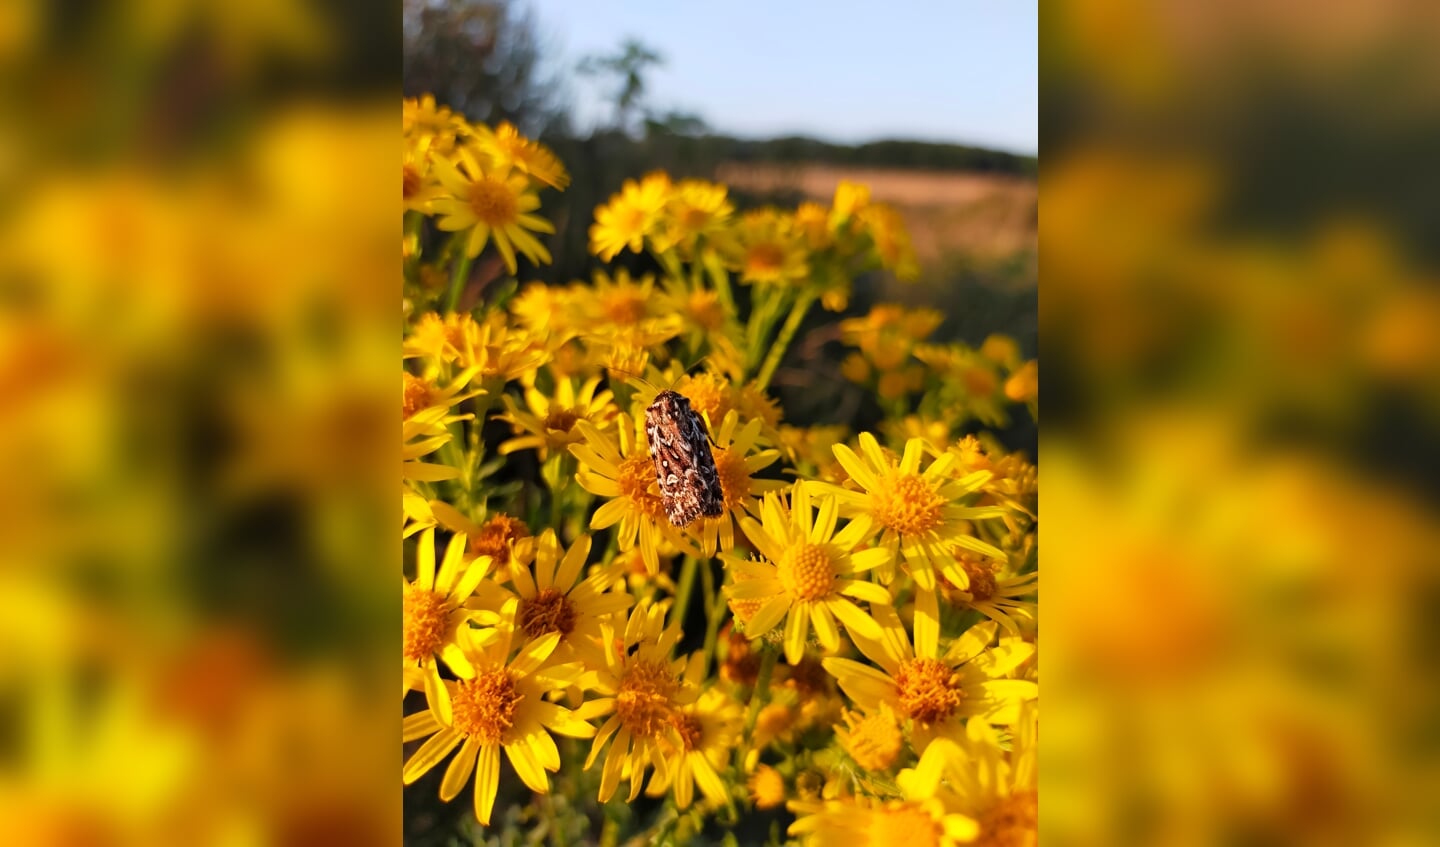 Tijdens een zonnige avondwandeling op de Ginkelse heide in Ede, zag ik een vlinder op de gele bloemetjes. Deze foto is gemaakt op 22-07-21. 
